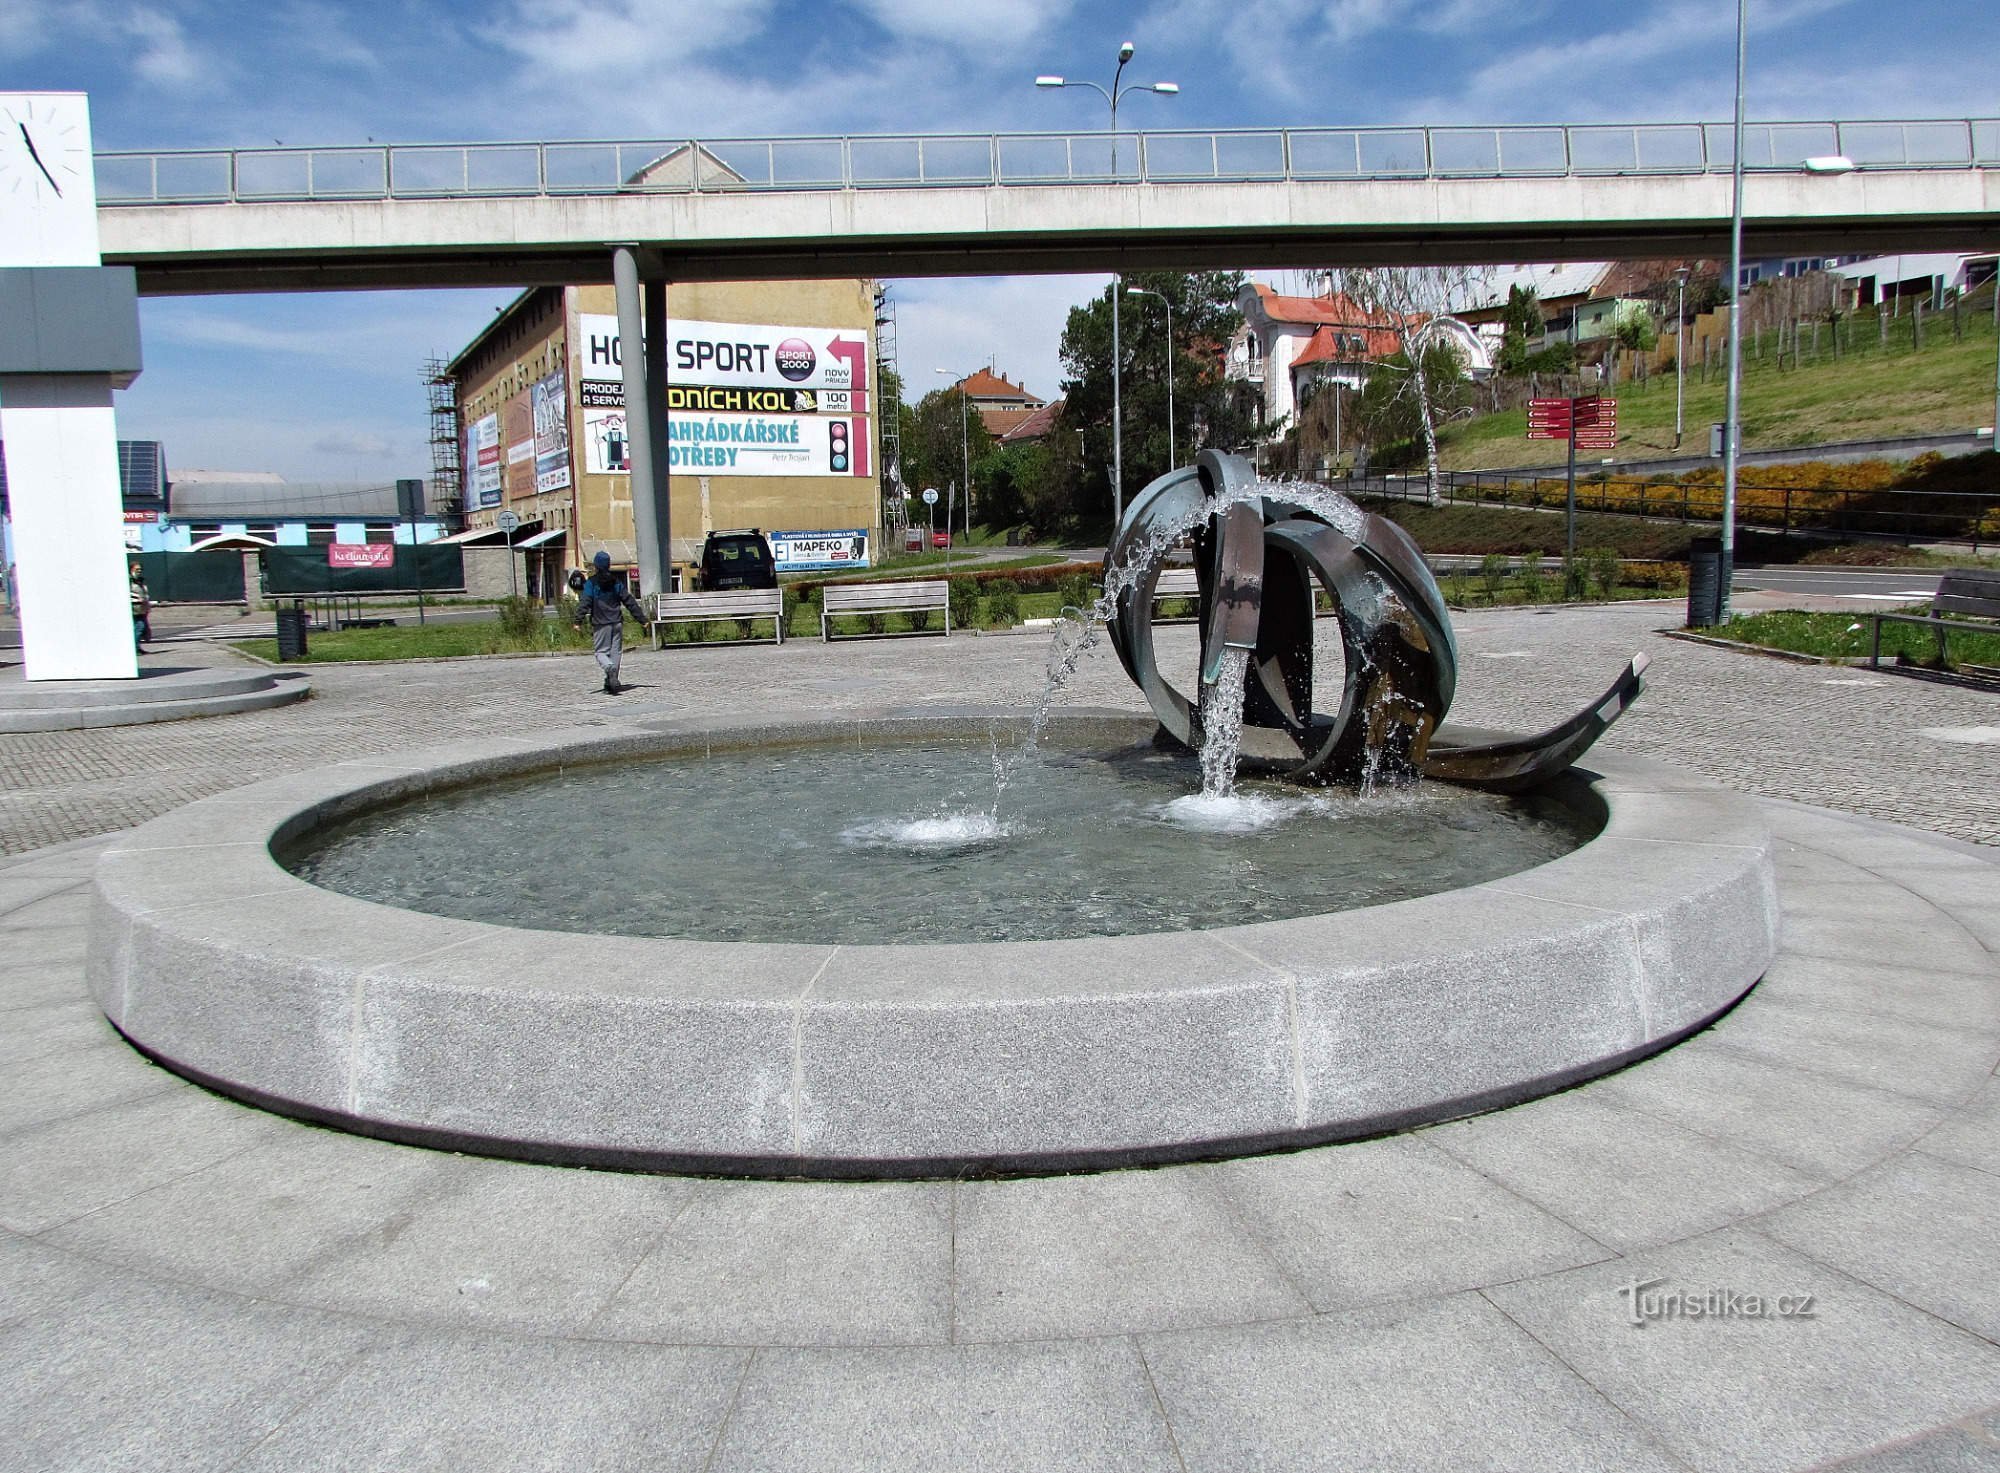 Угерский Брод - фонтан у вокзала